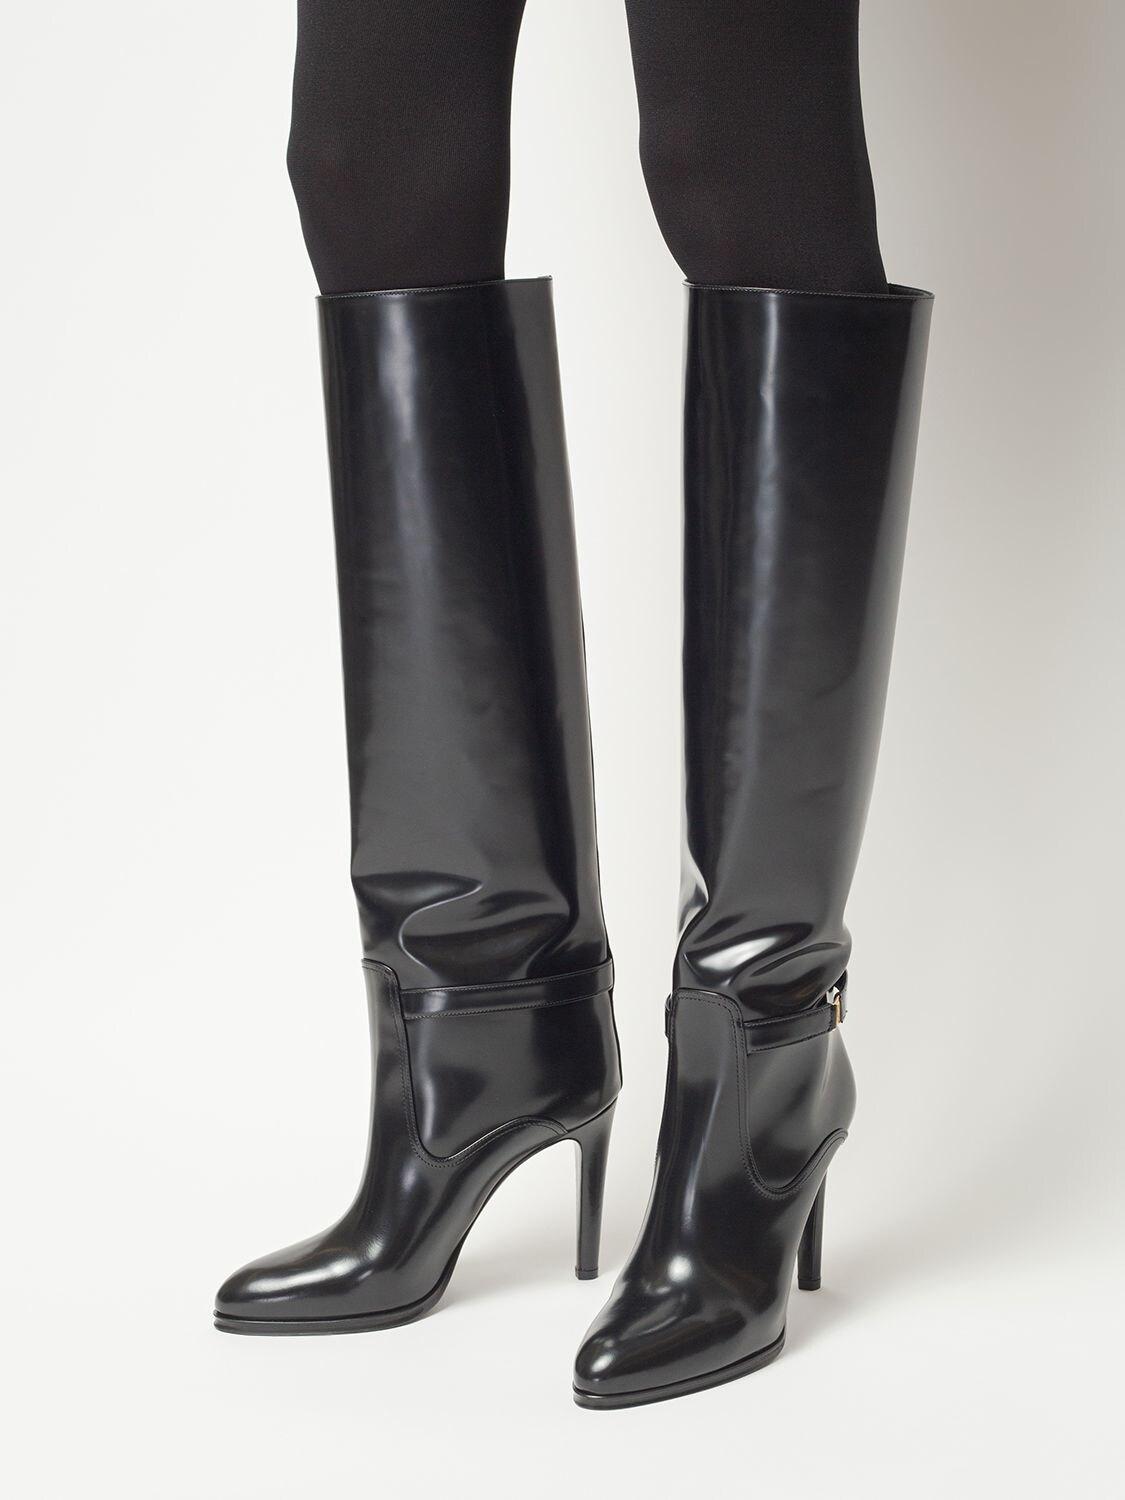 Saint Laurent 110mm Diane Signature Leather Boots in Black | Lyst Australia